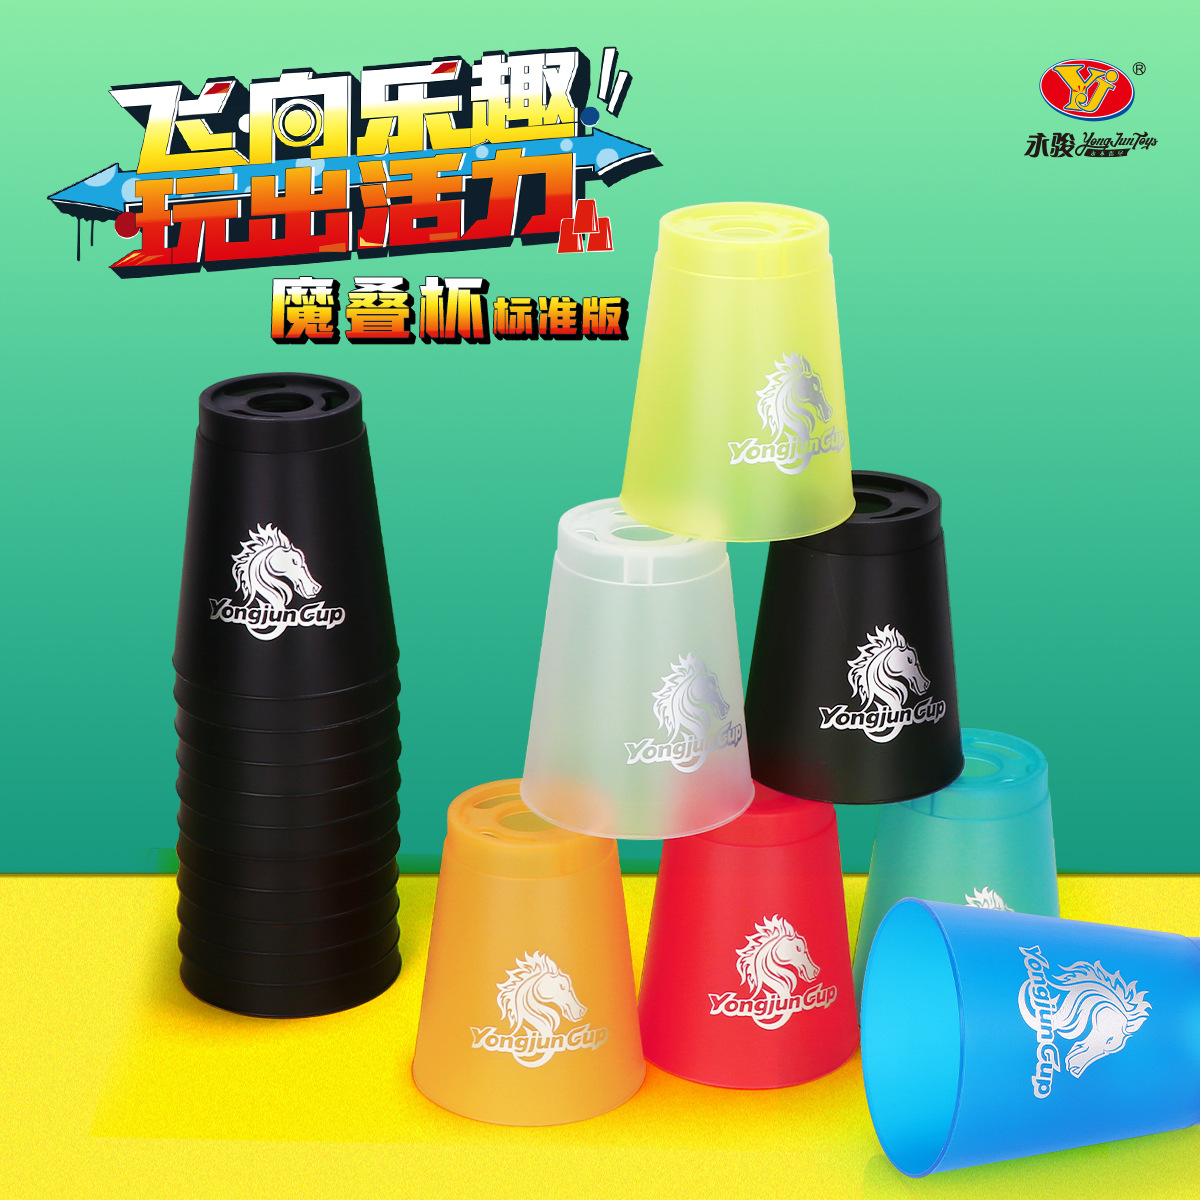 永骏飞叠杯小学生比赛专用速叠杯竞技叠叠杯儿童套装幼儿园飞碟杯